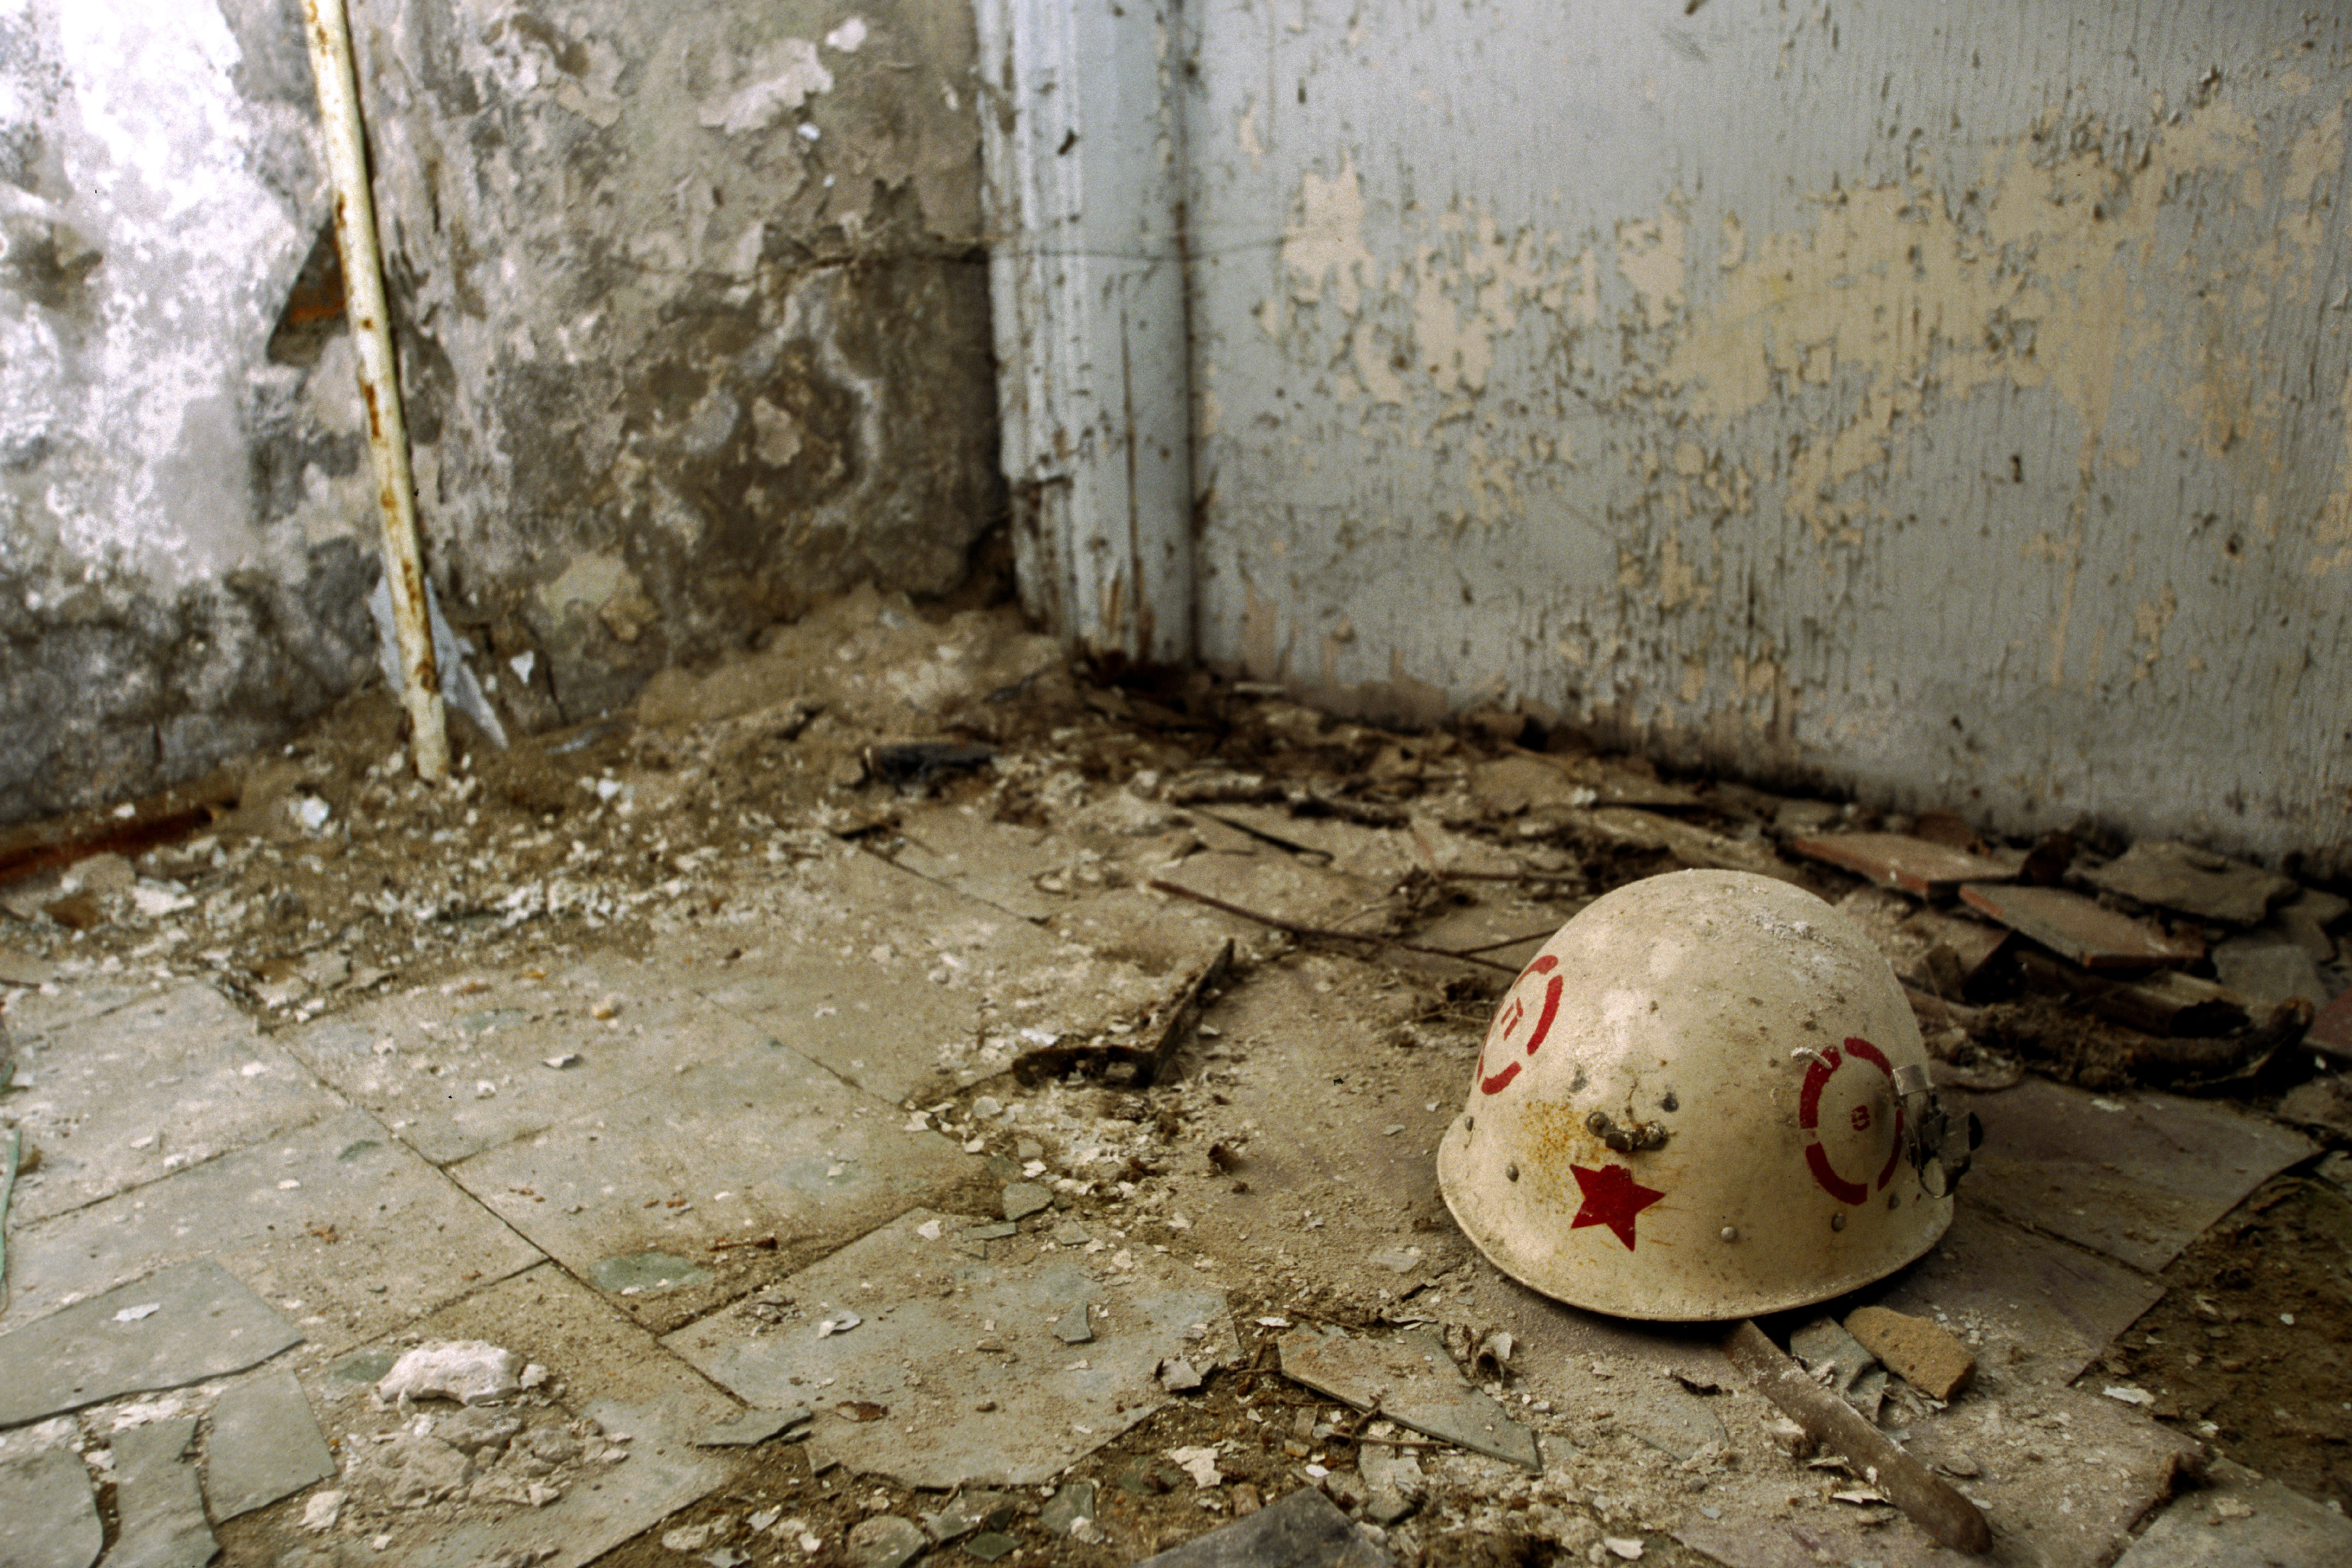 ядерный, советский, шлем, Припять, Чернобыль - обои на рабочий стол